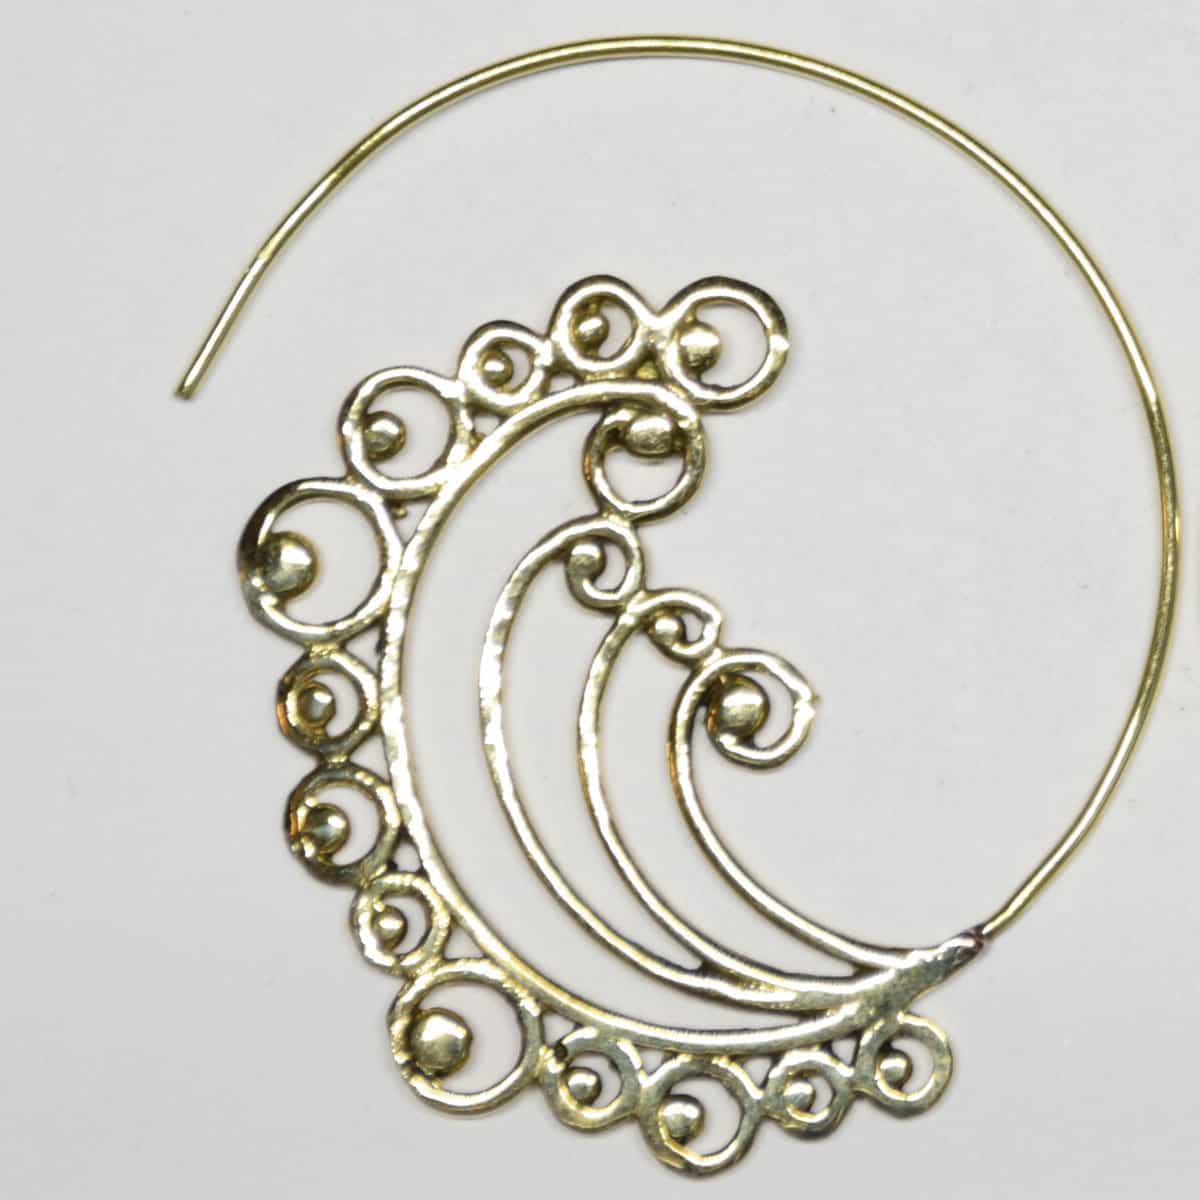 Rajasthan Design - Brass Earrings - N°6890